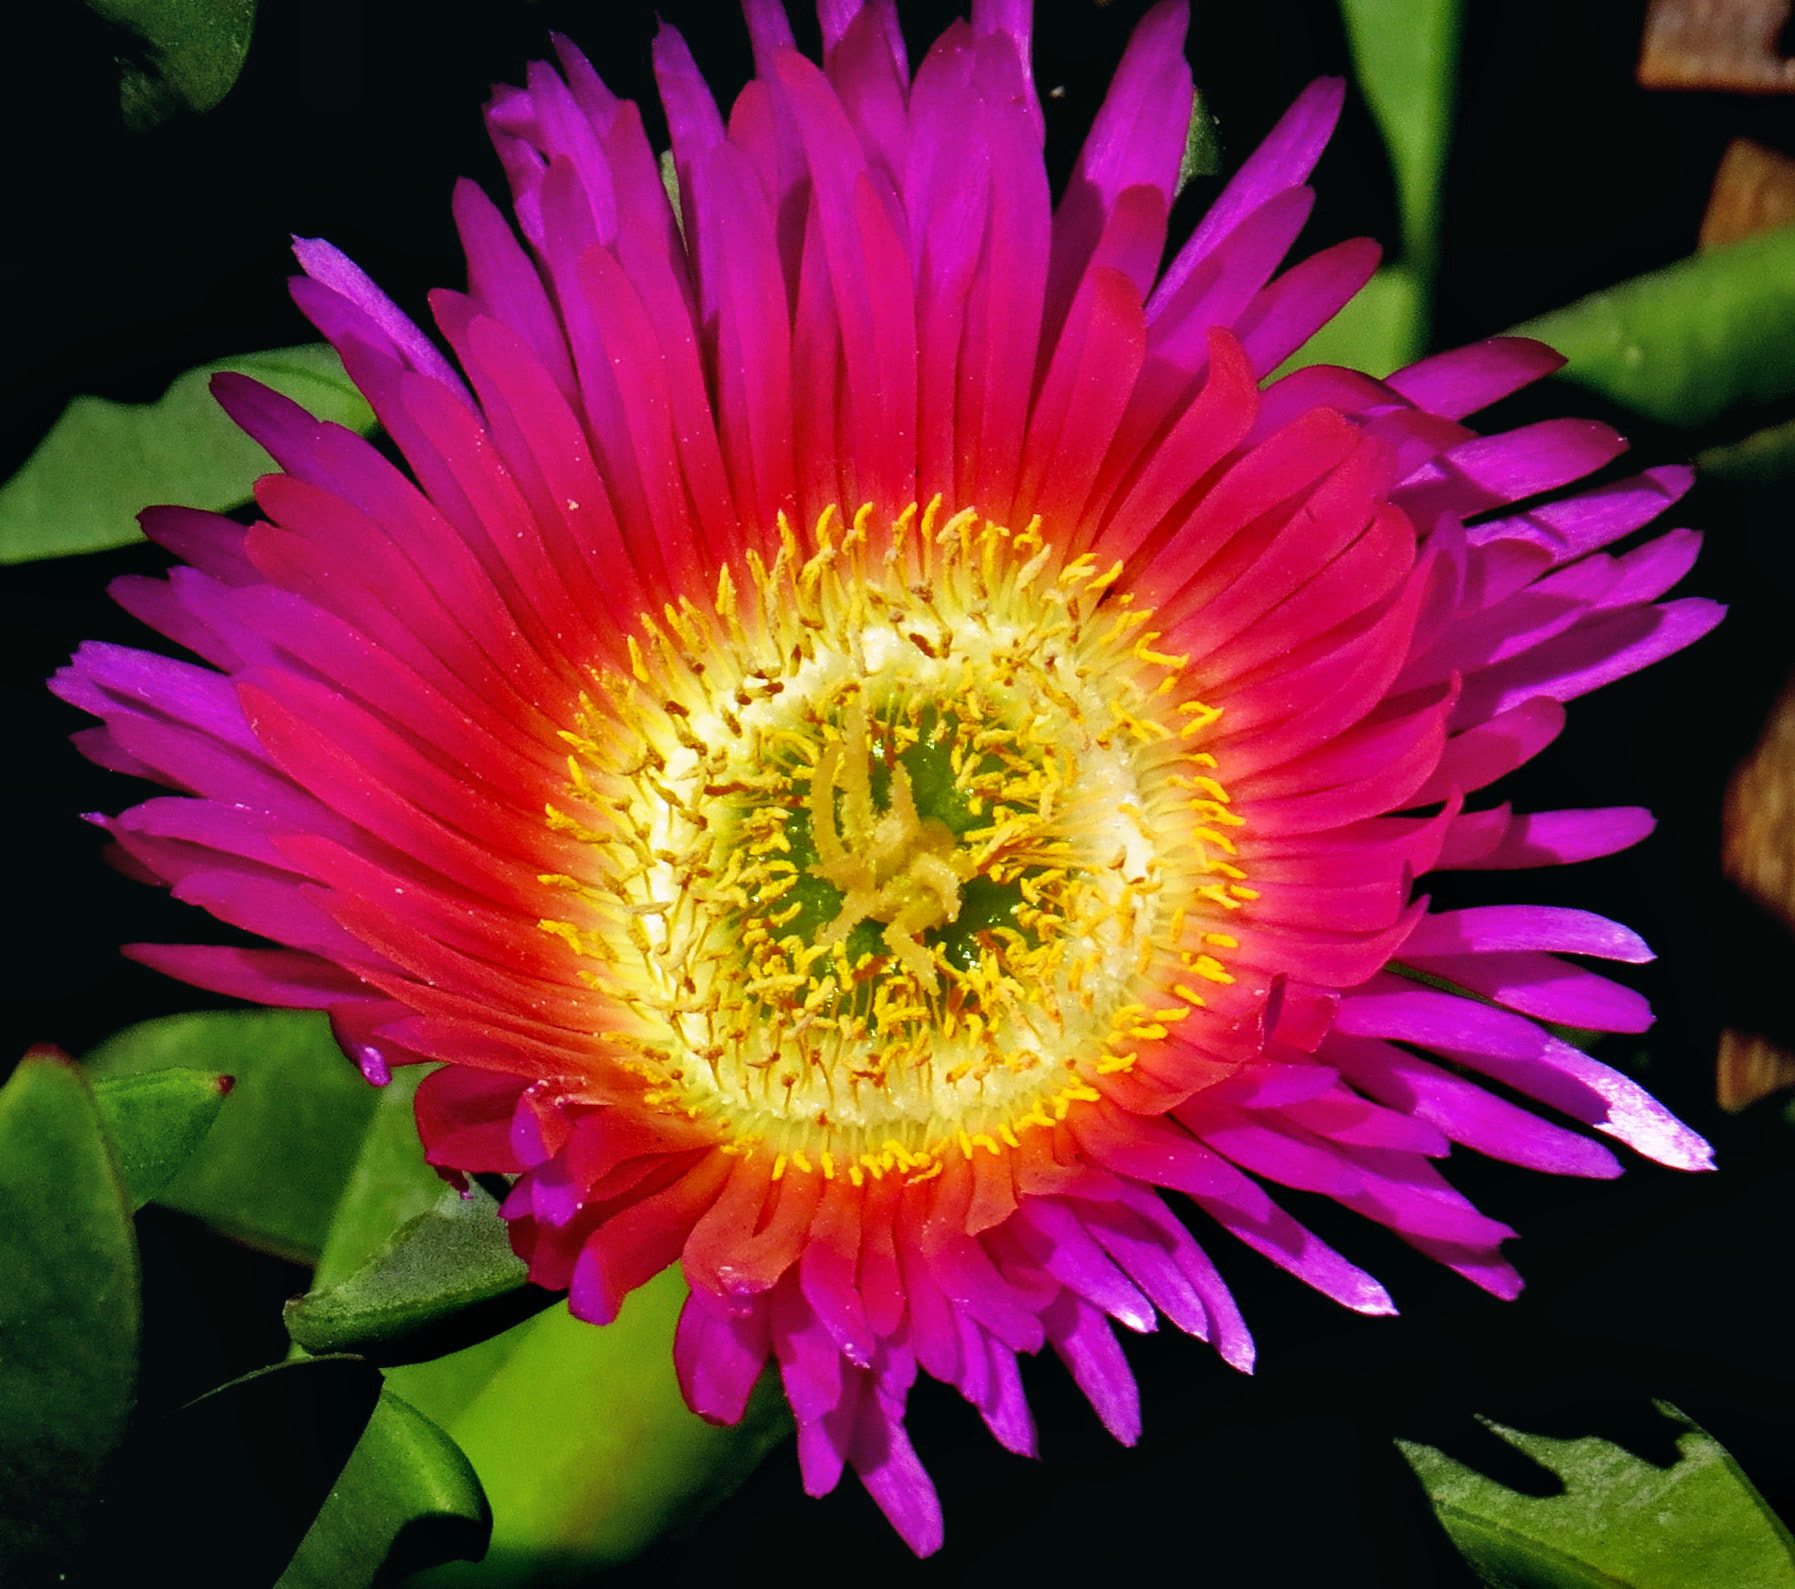 Canon PowerShot SX50 HS sample photo. Purple dandelion flower photography